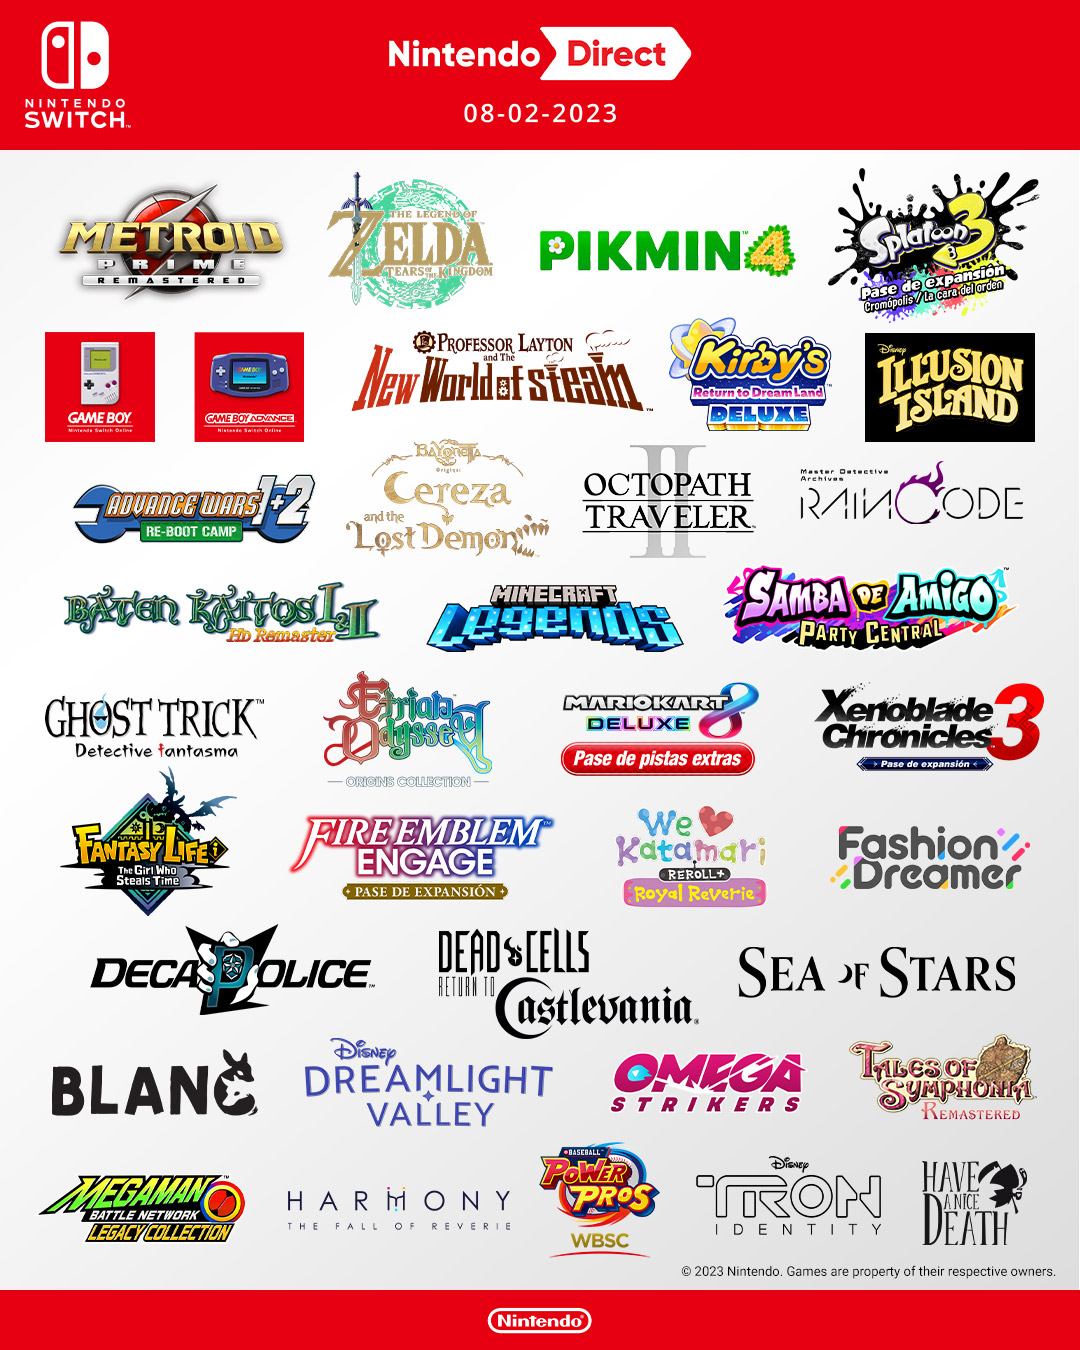 Nintendo recopila en esta imagen todos los juegos del último Direct